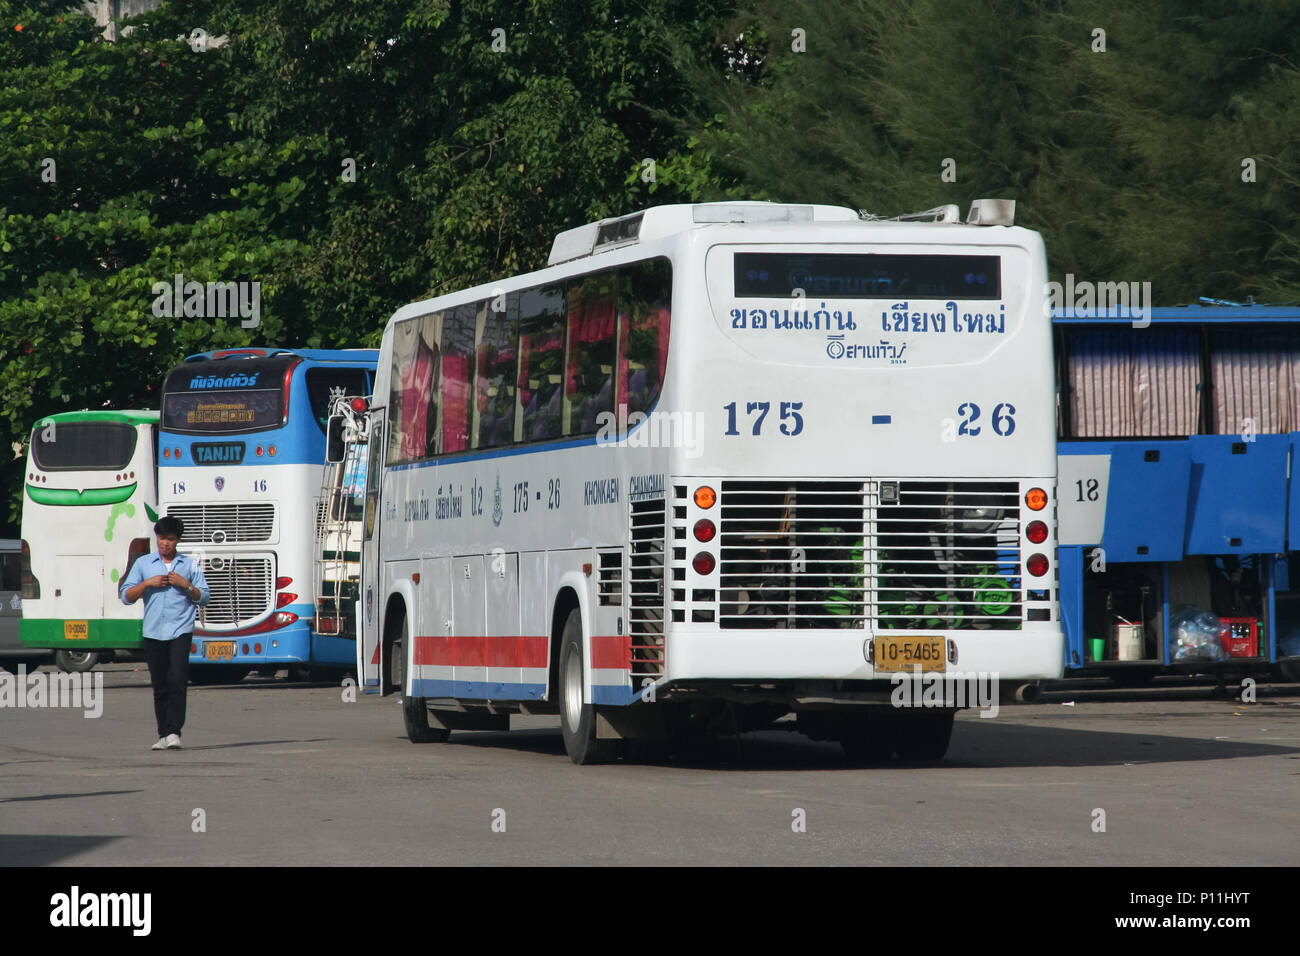 CHIANG MAI, THAÏLANDE - 8 septembre 2011 : tour de bus société Esarn Khonkaen et Chiangmai. Photo à la gare routière de Chiangmai, Thaïlande. Banque D'Images